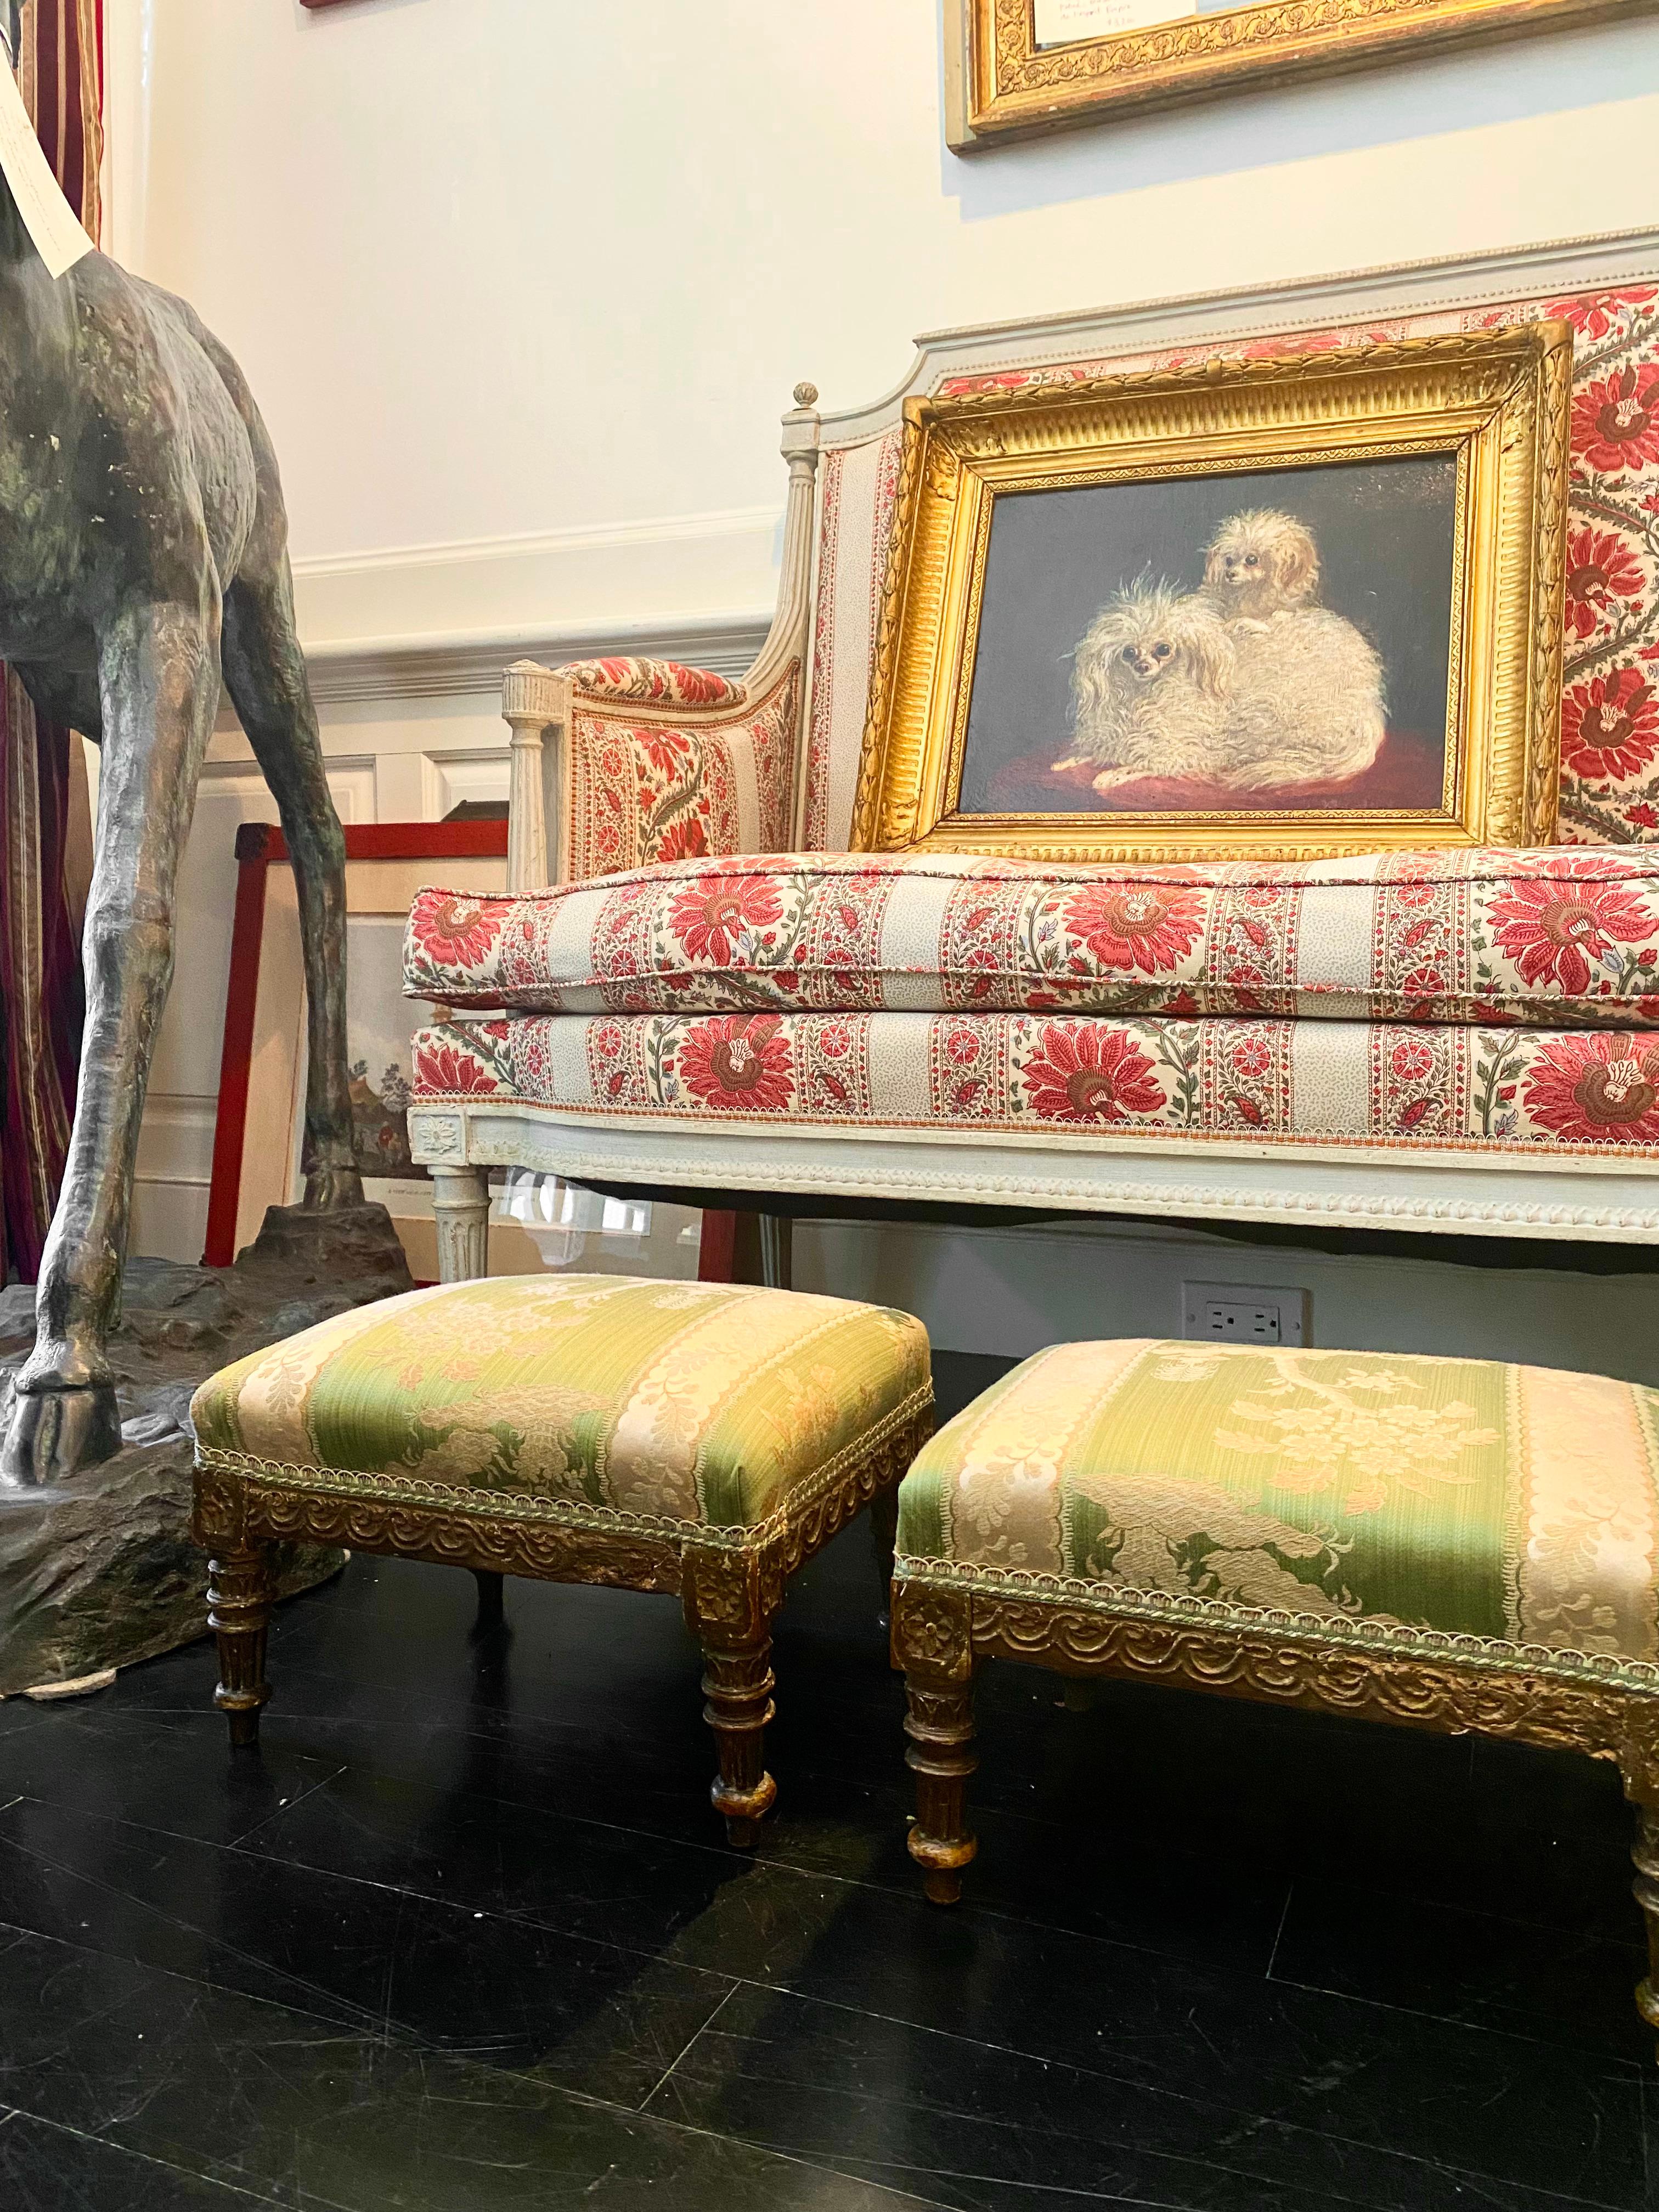 Paire de poufs français, tapissés, rembourrés et boutonnés, avec coussins supérieurs séparés, de style Napoléon III, souvent appelé 